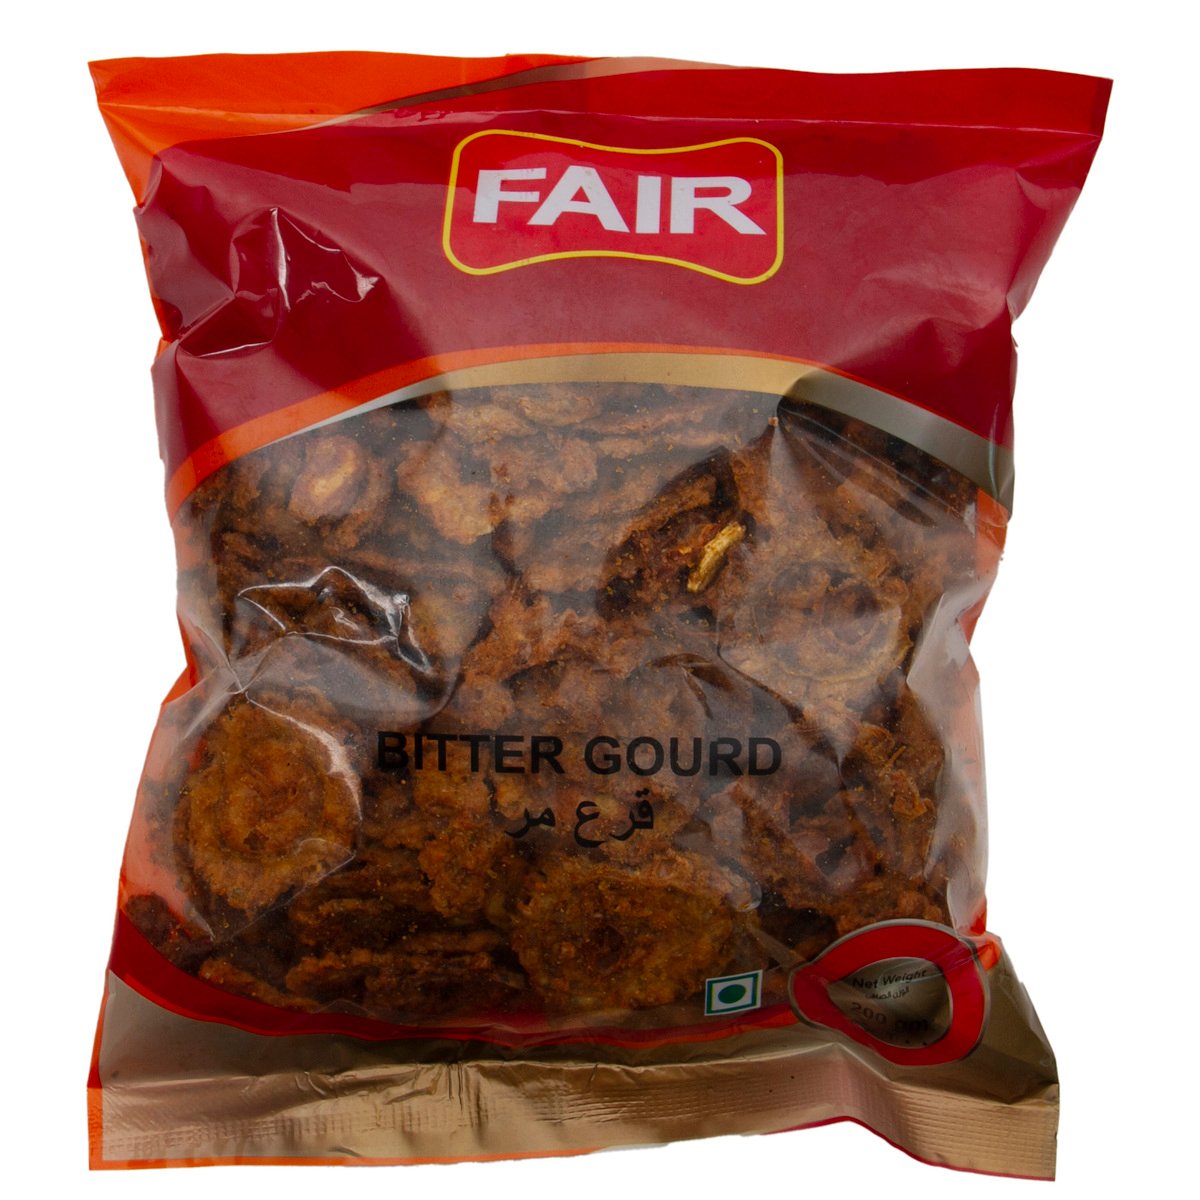 Fair Bitter Gourd Chips 200 g